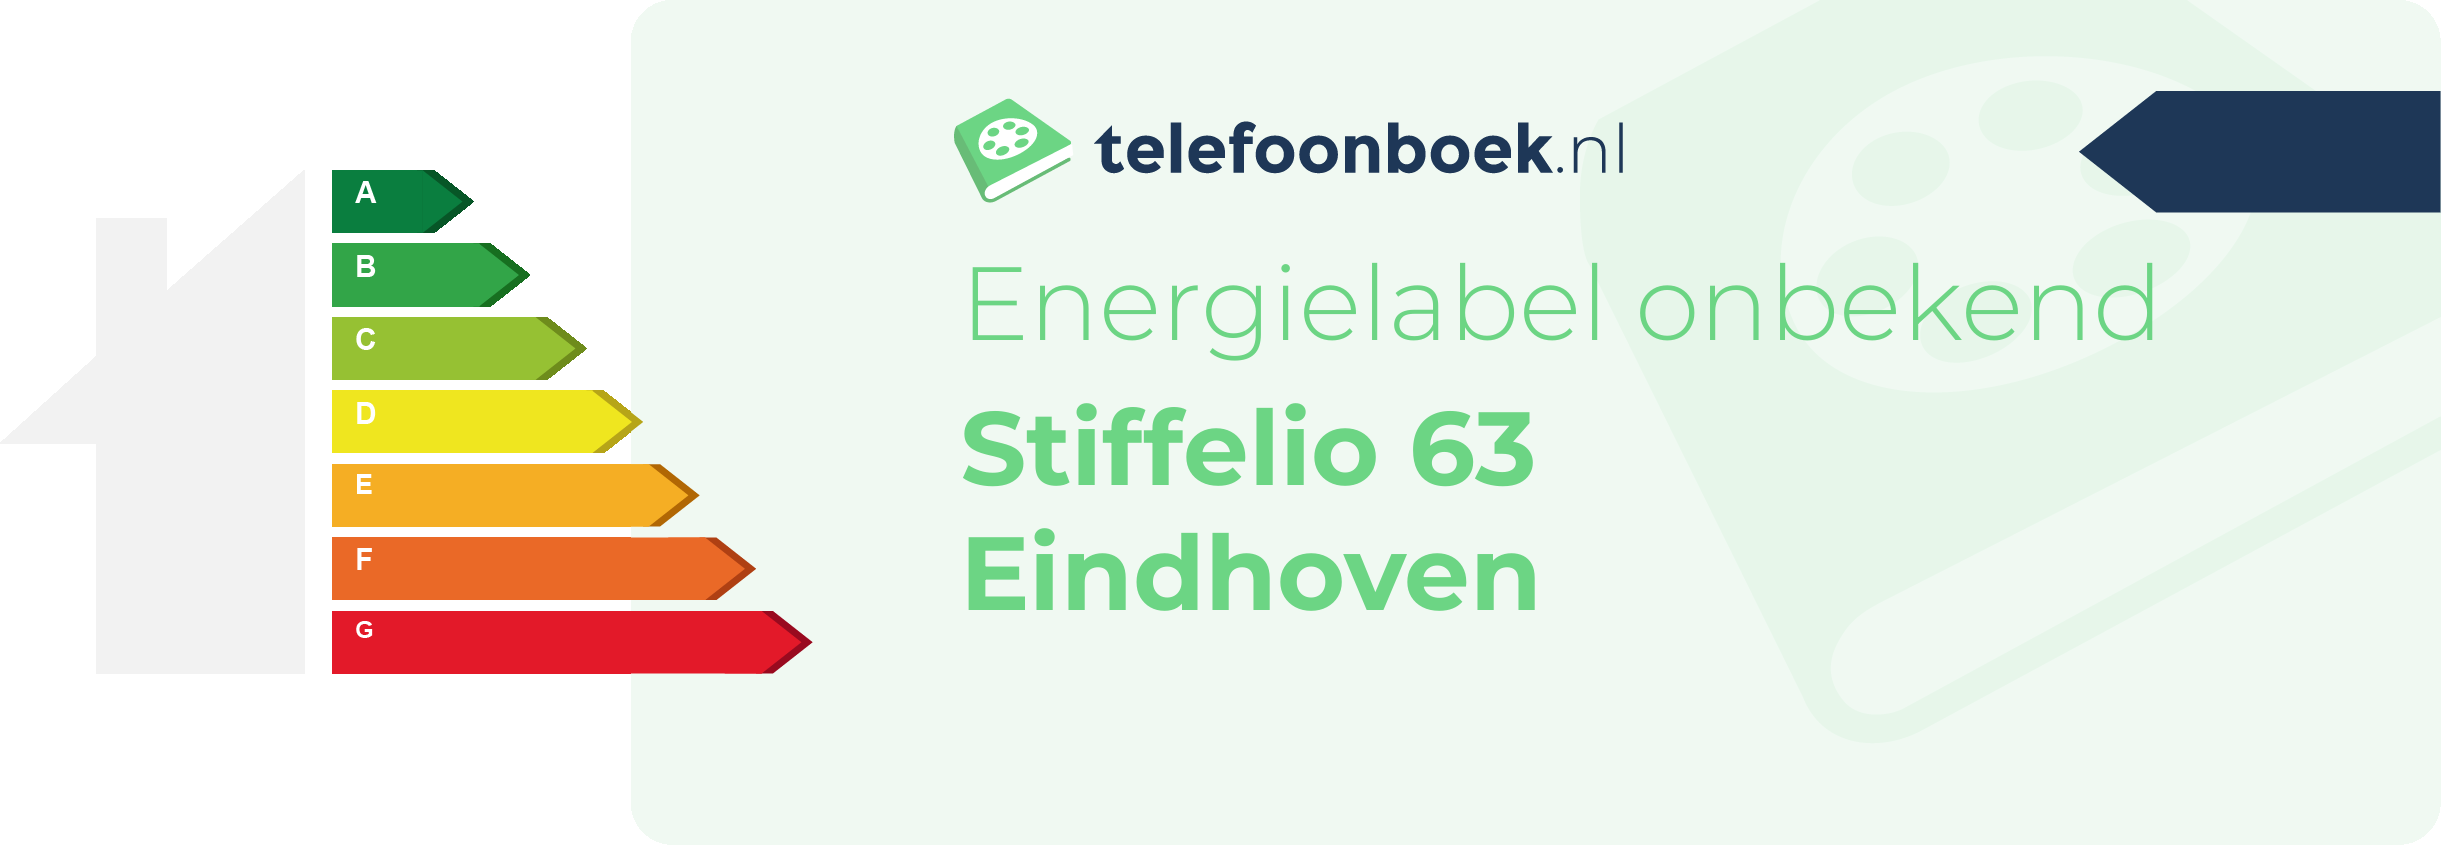 Energielabel Stiffelio 63 Eindhoven